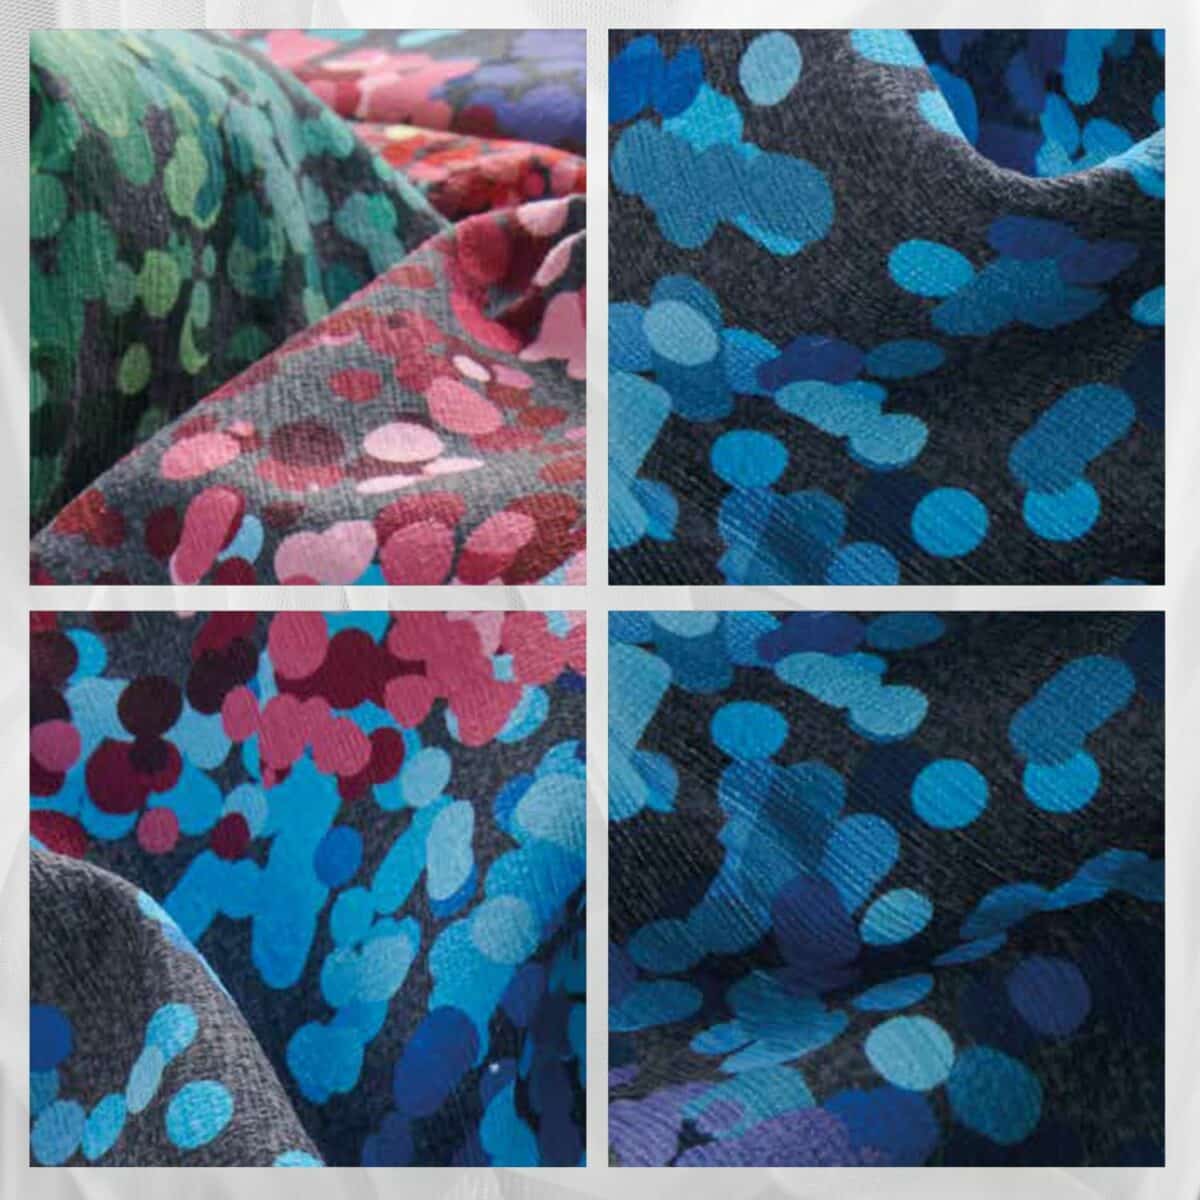 edmond-tappeto-arredo-emozioni-artista-made-in-italy-astratto-pittoresco-sfumato-multicolor-dettagli